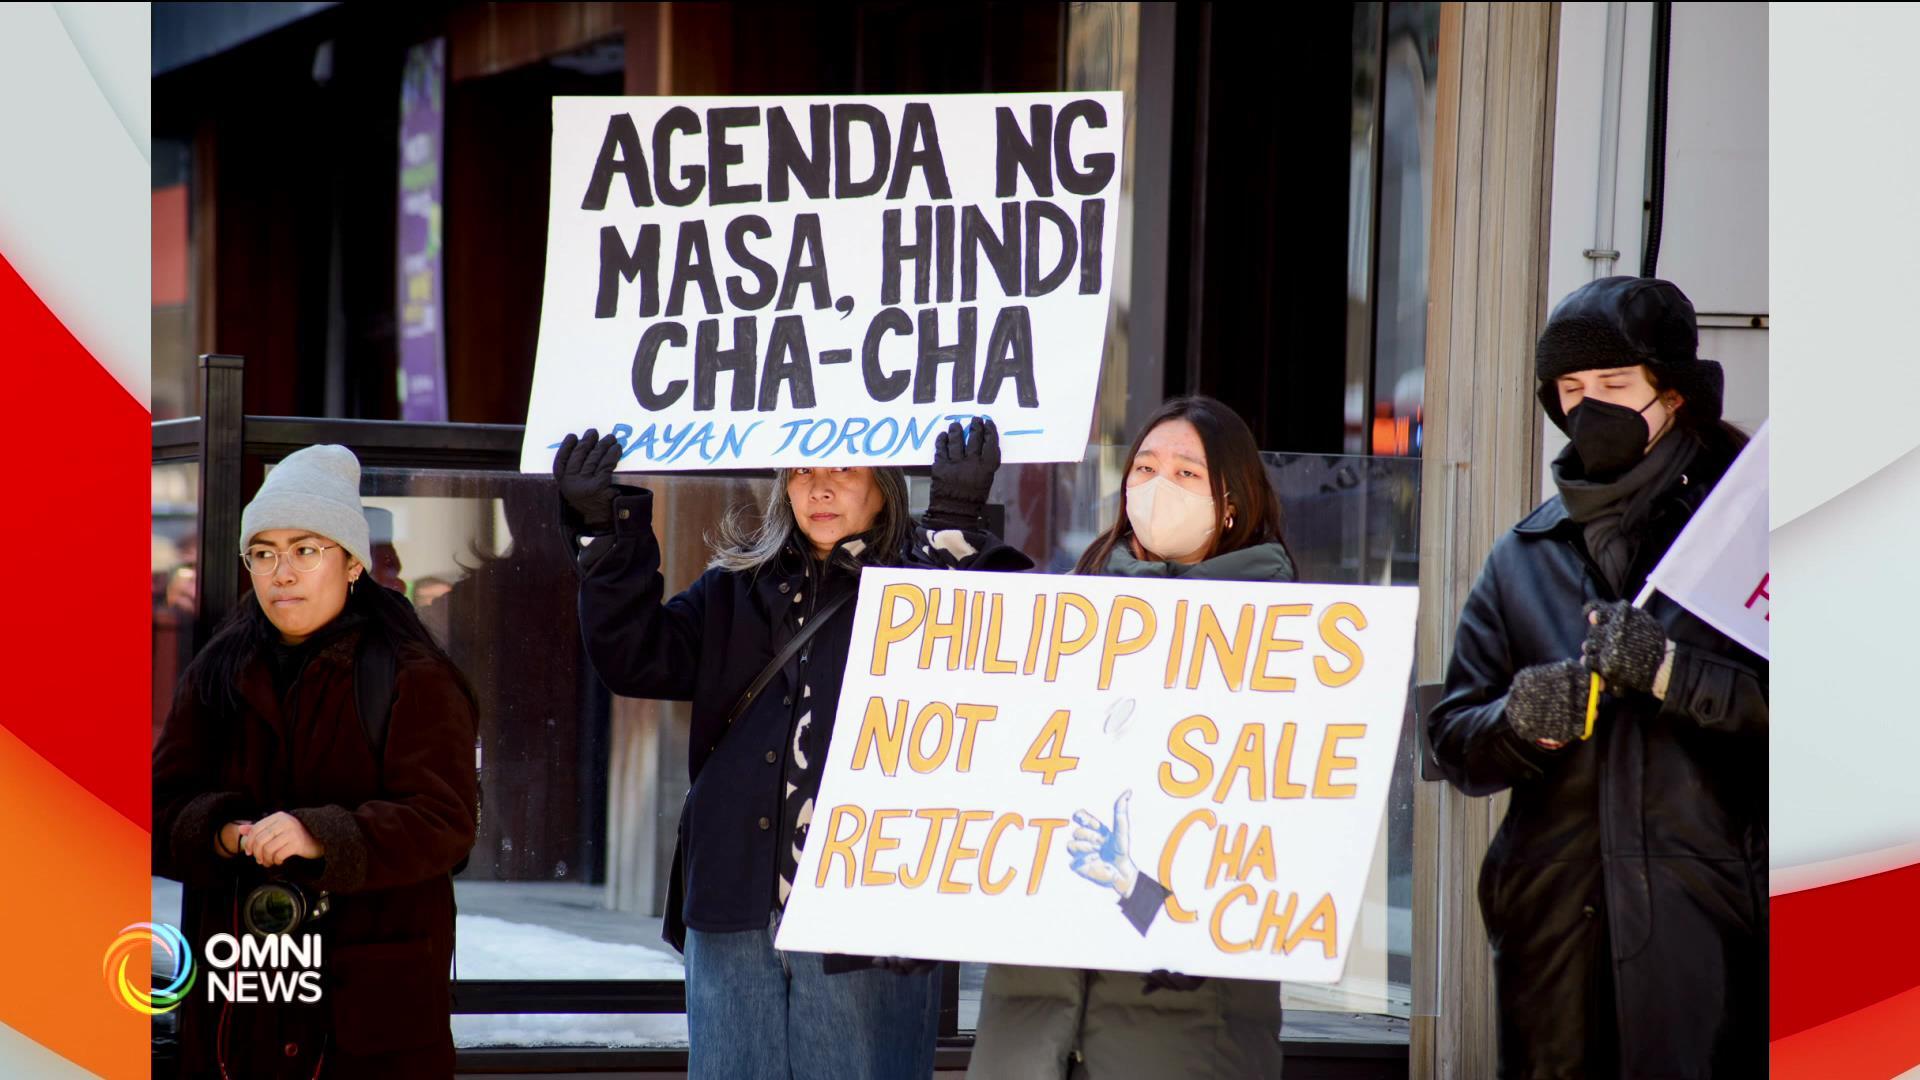 Filipino-Canadians nagprotesta laban sa mga pagbabago sa konstitusyon ng Pilipinas